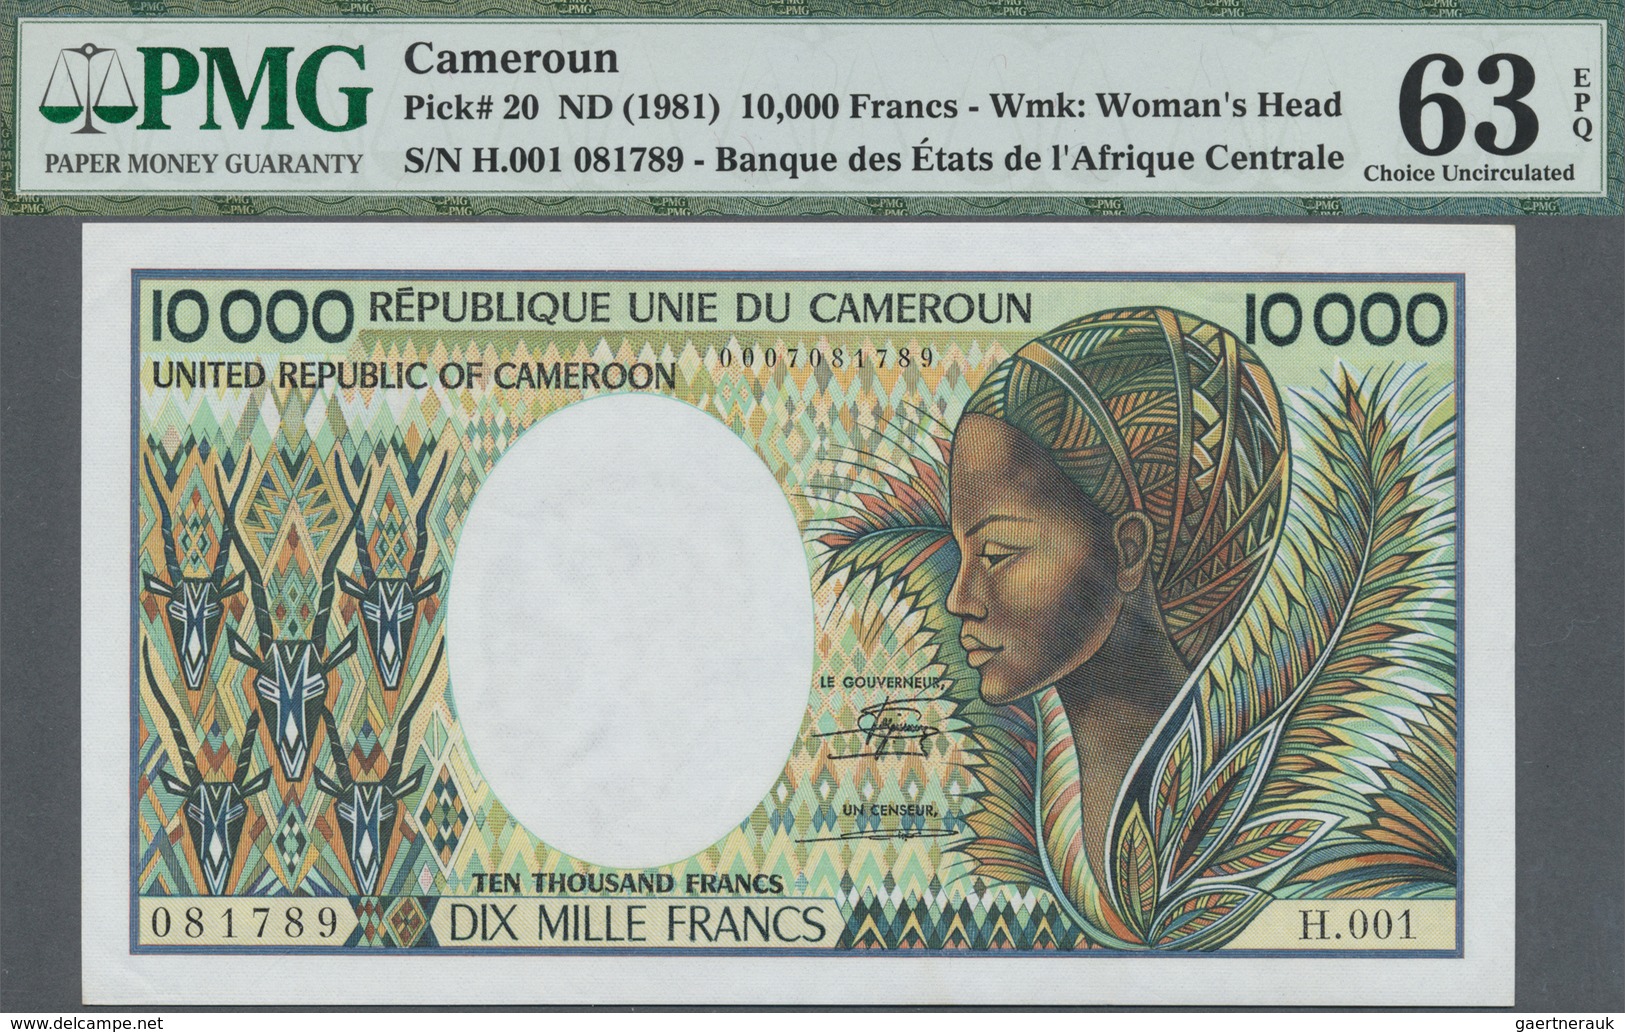 Cameroon / Kamerun: Banque Des États De L'Afrique Centrale - République Unie Du Cameroun 10.000 Fran - Cameroon